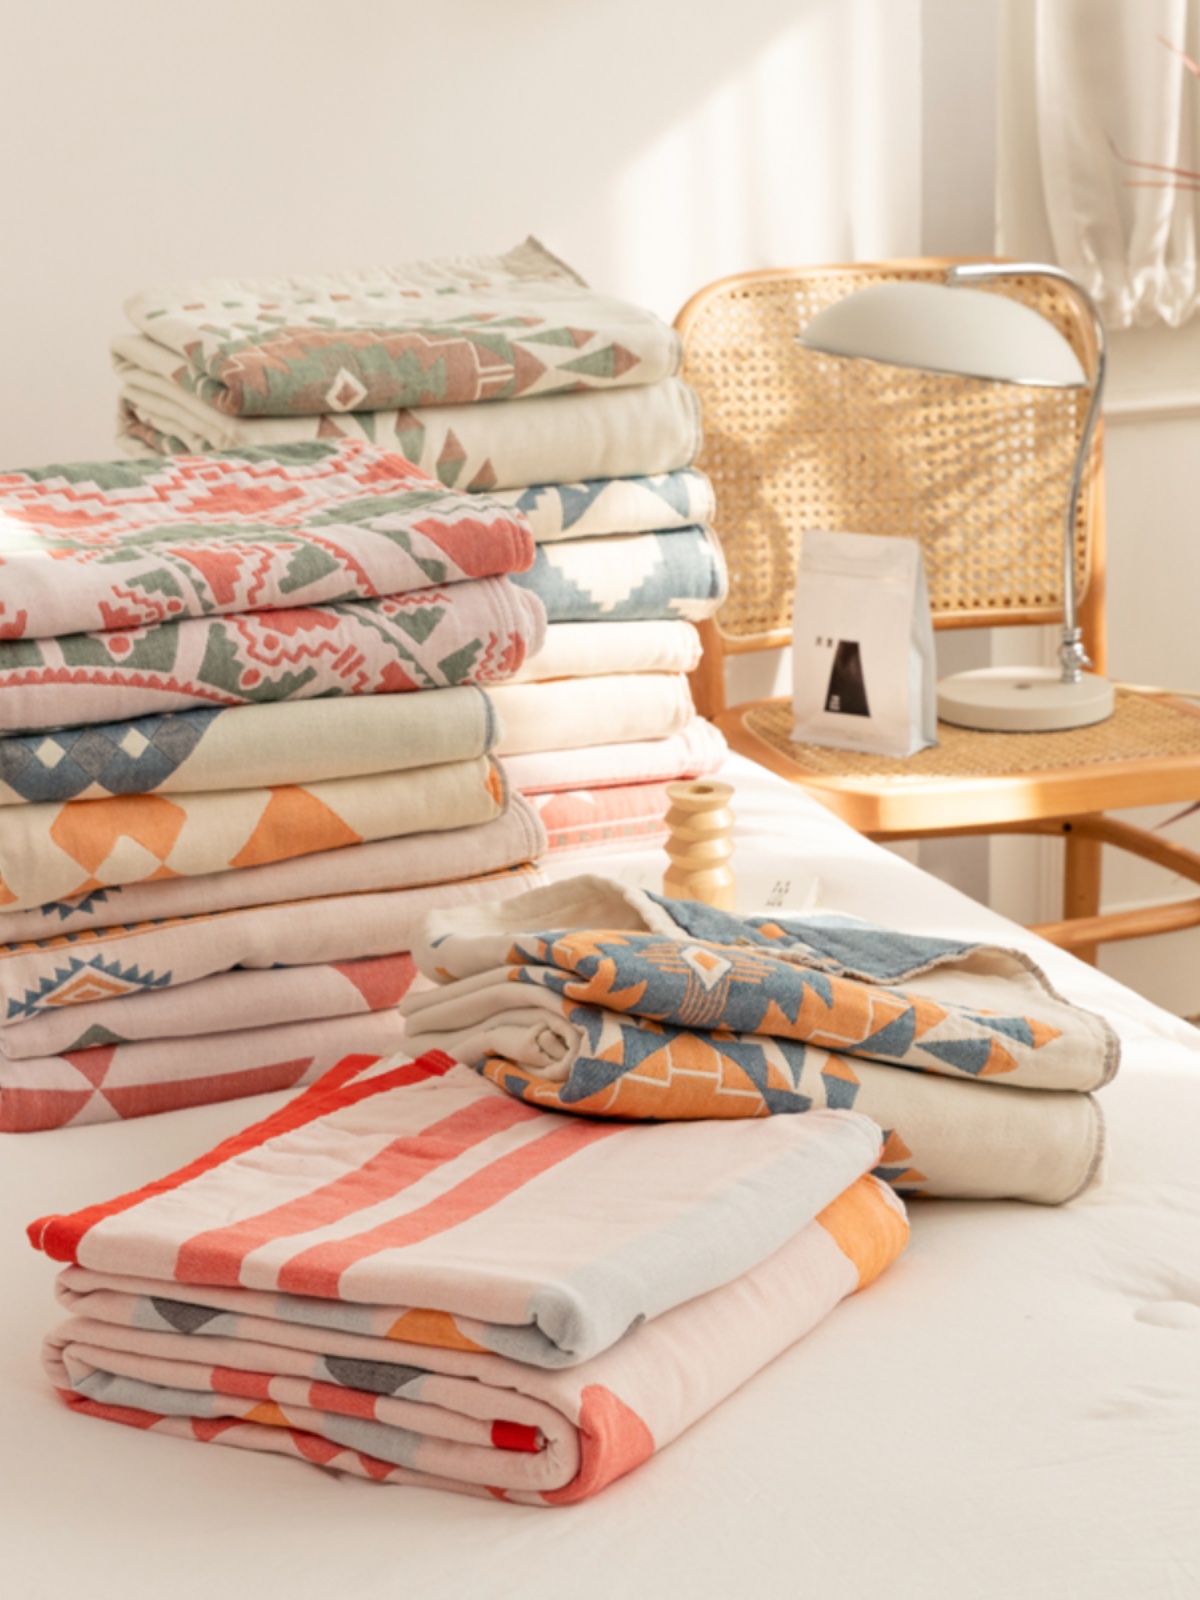 柔軟舒適a類母嬰級四層純棉紗布毯透氣舒適適合夏季臥室使用